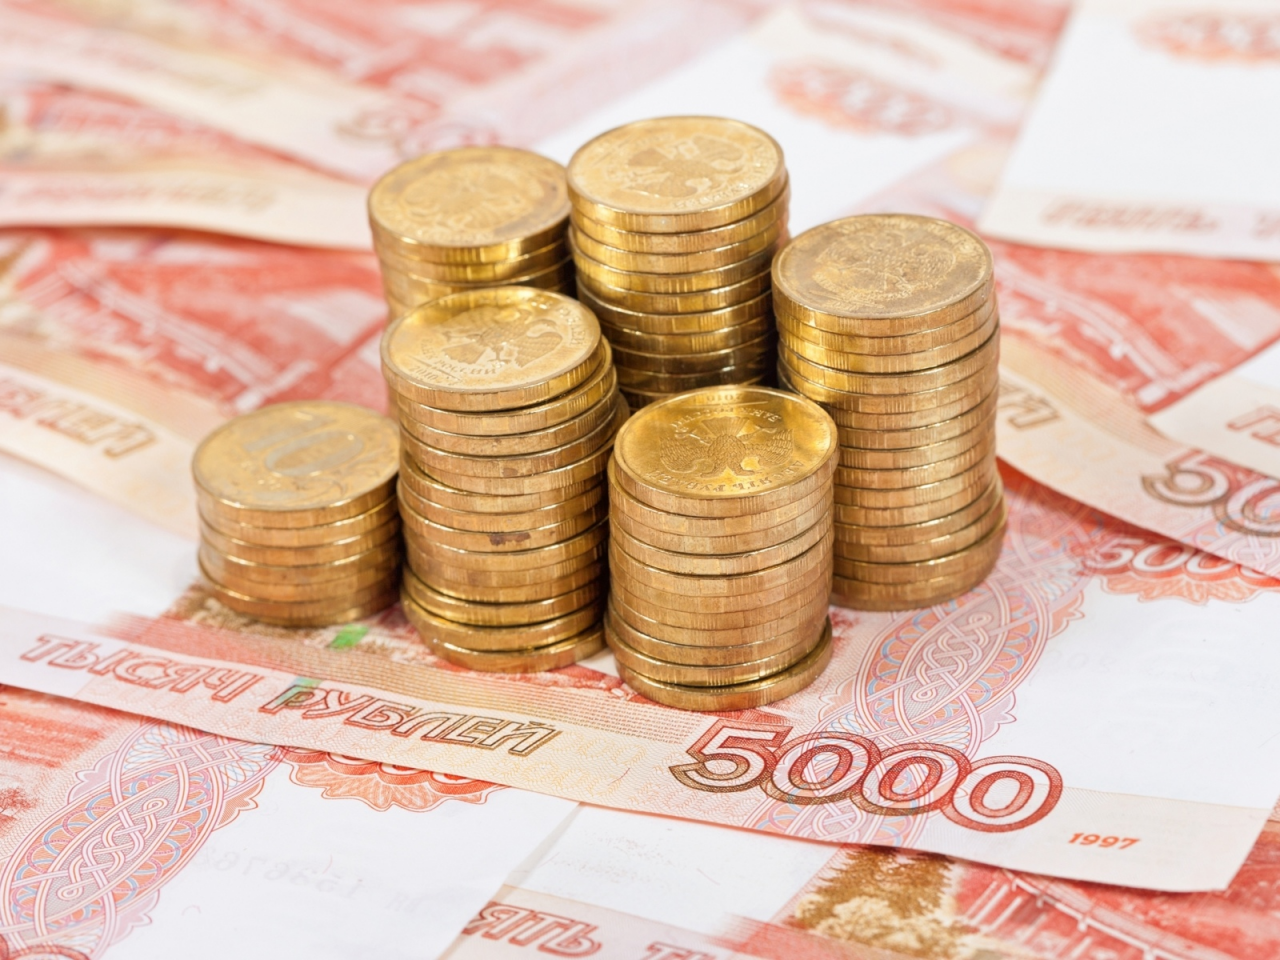 банкноты, монеты, рубли